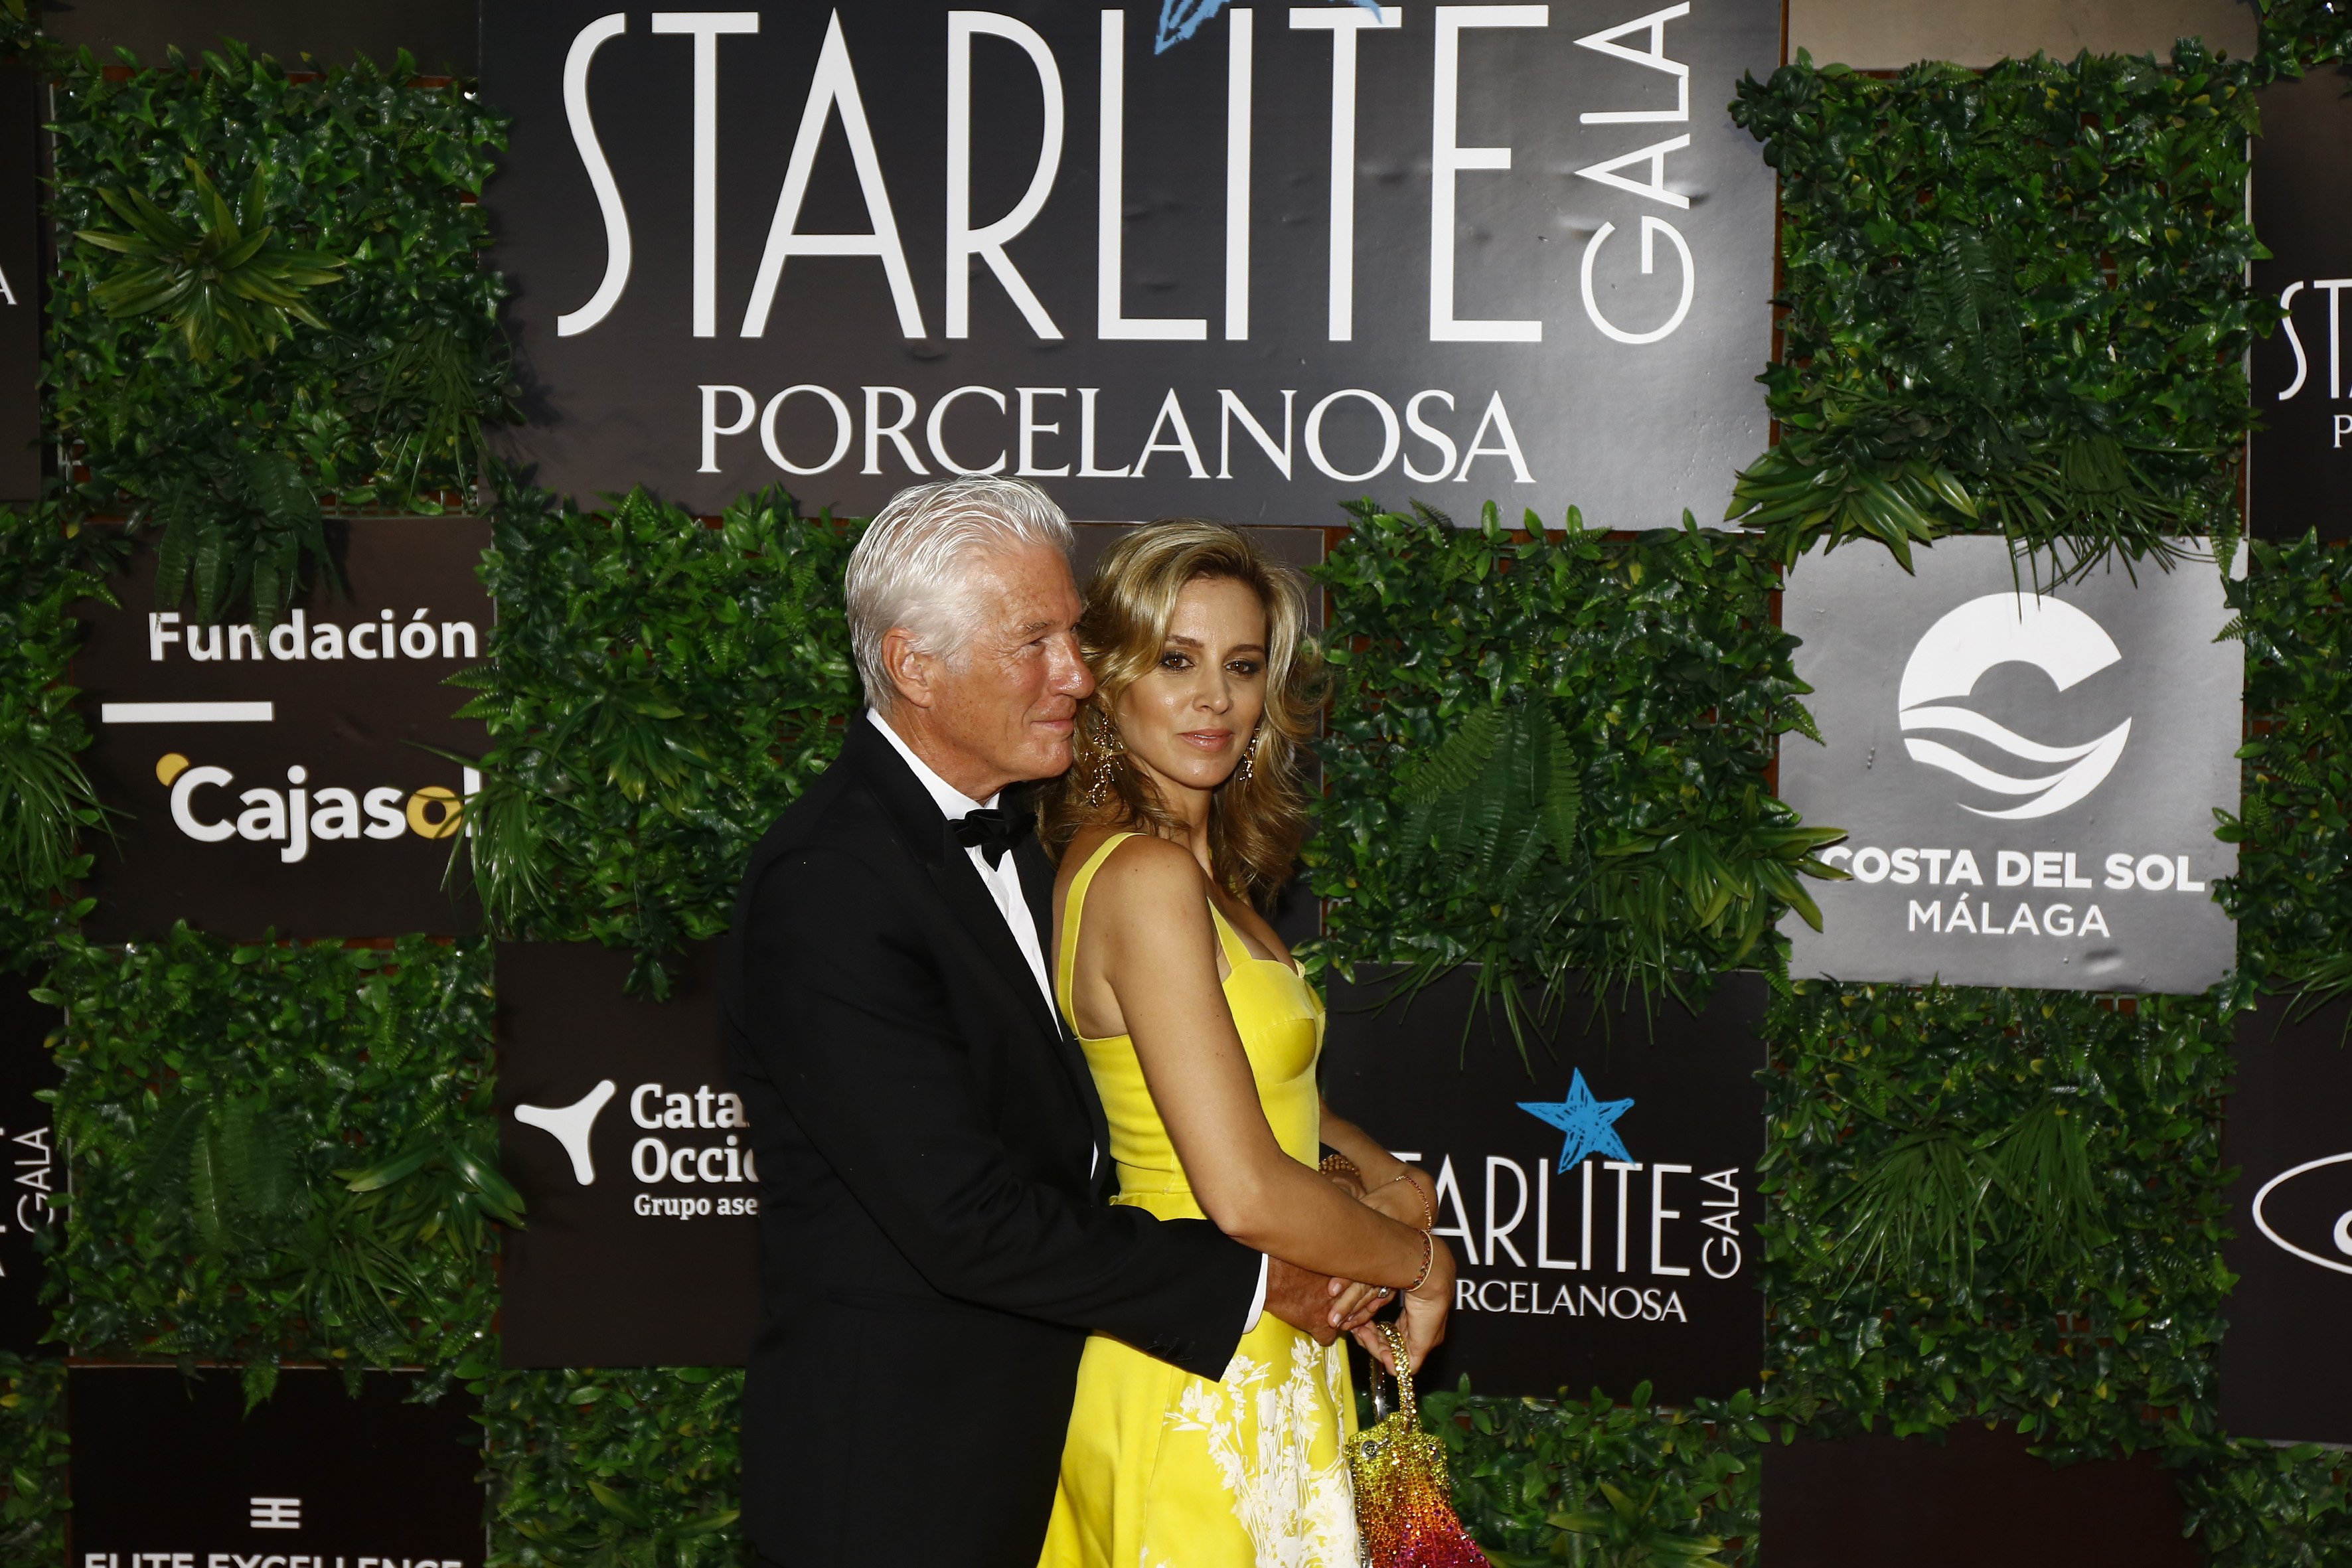 Richard Gere y Alejandra Silva en la Gala Starlite Porcelanosa 2022 en La Cantera, el 14 de agosto de 2022 en Marbella, España. | Foto: Getty Images